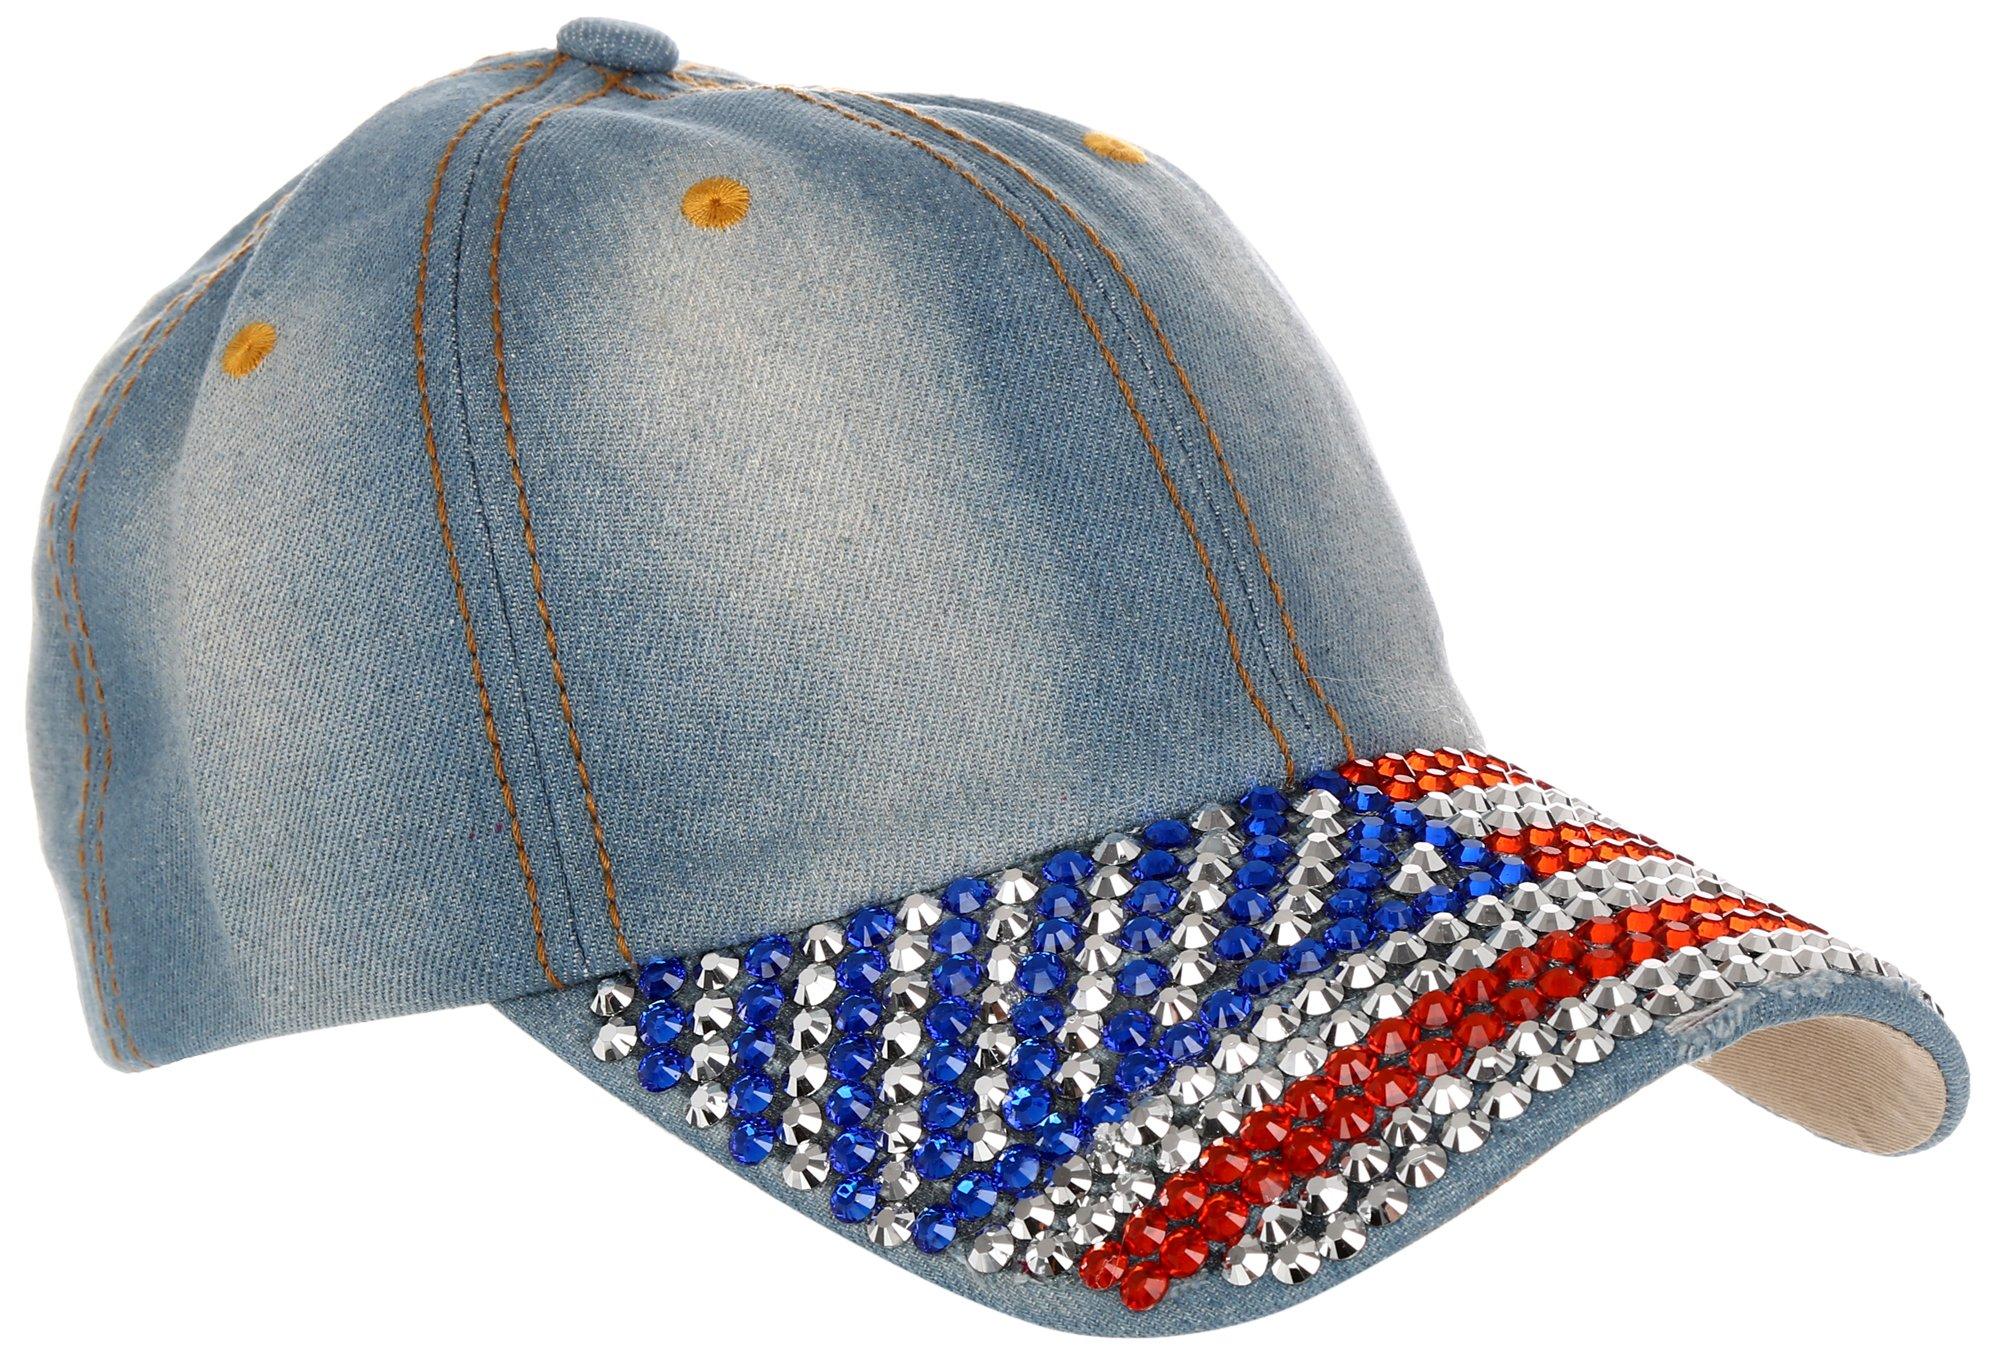 Women's Rhinestone Americana Hat